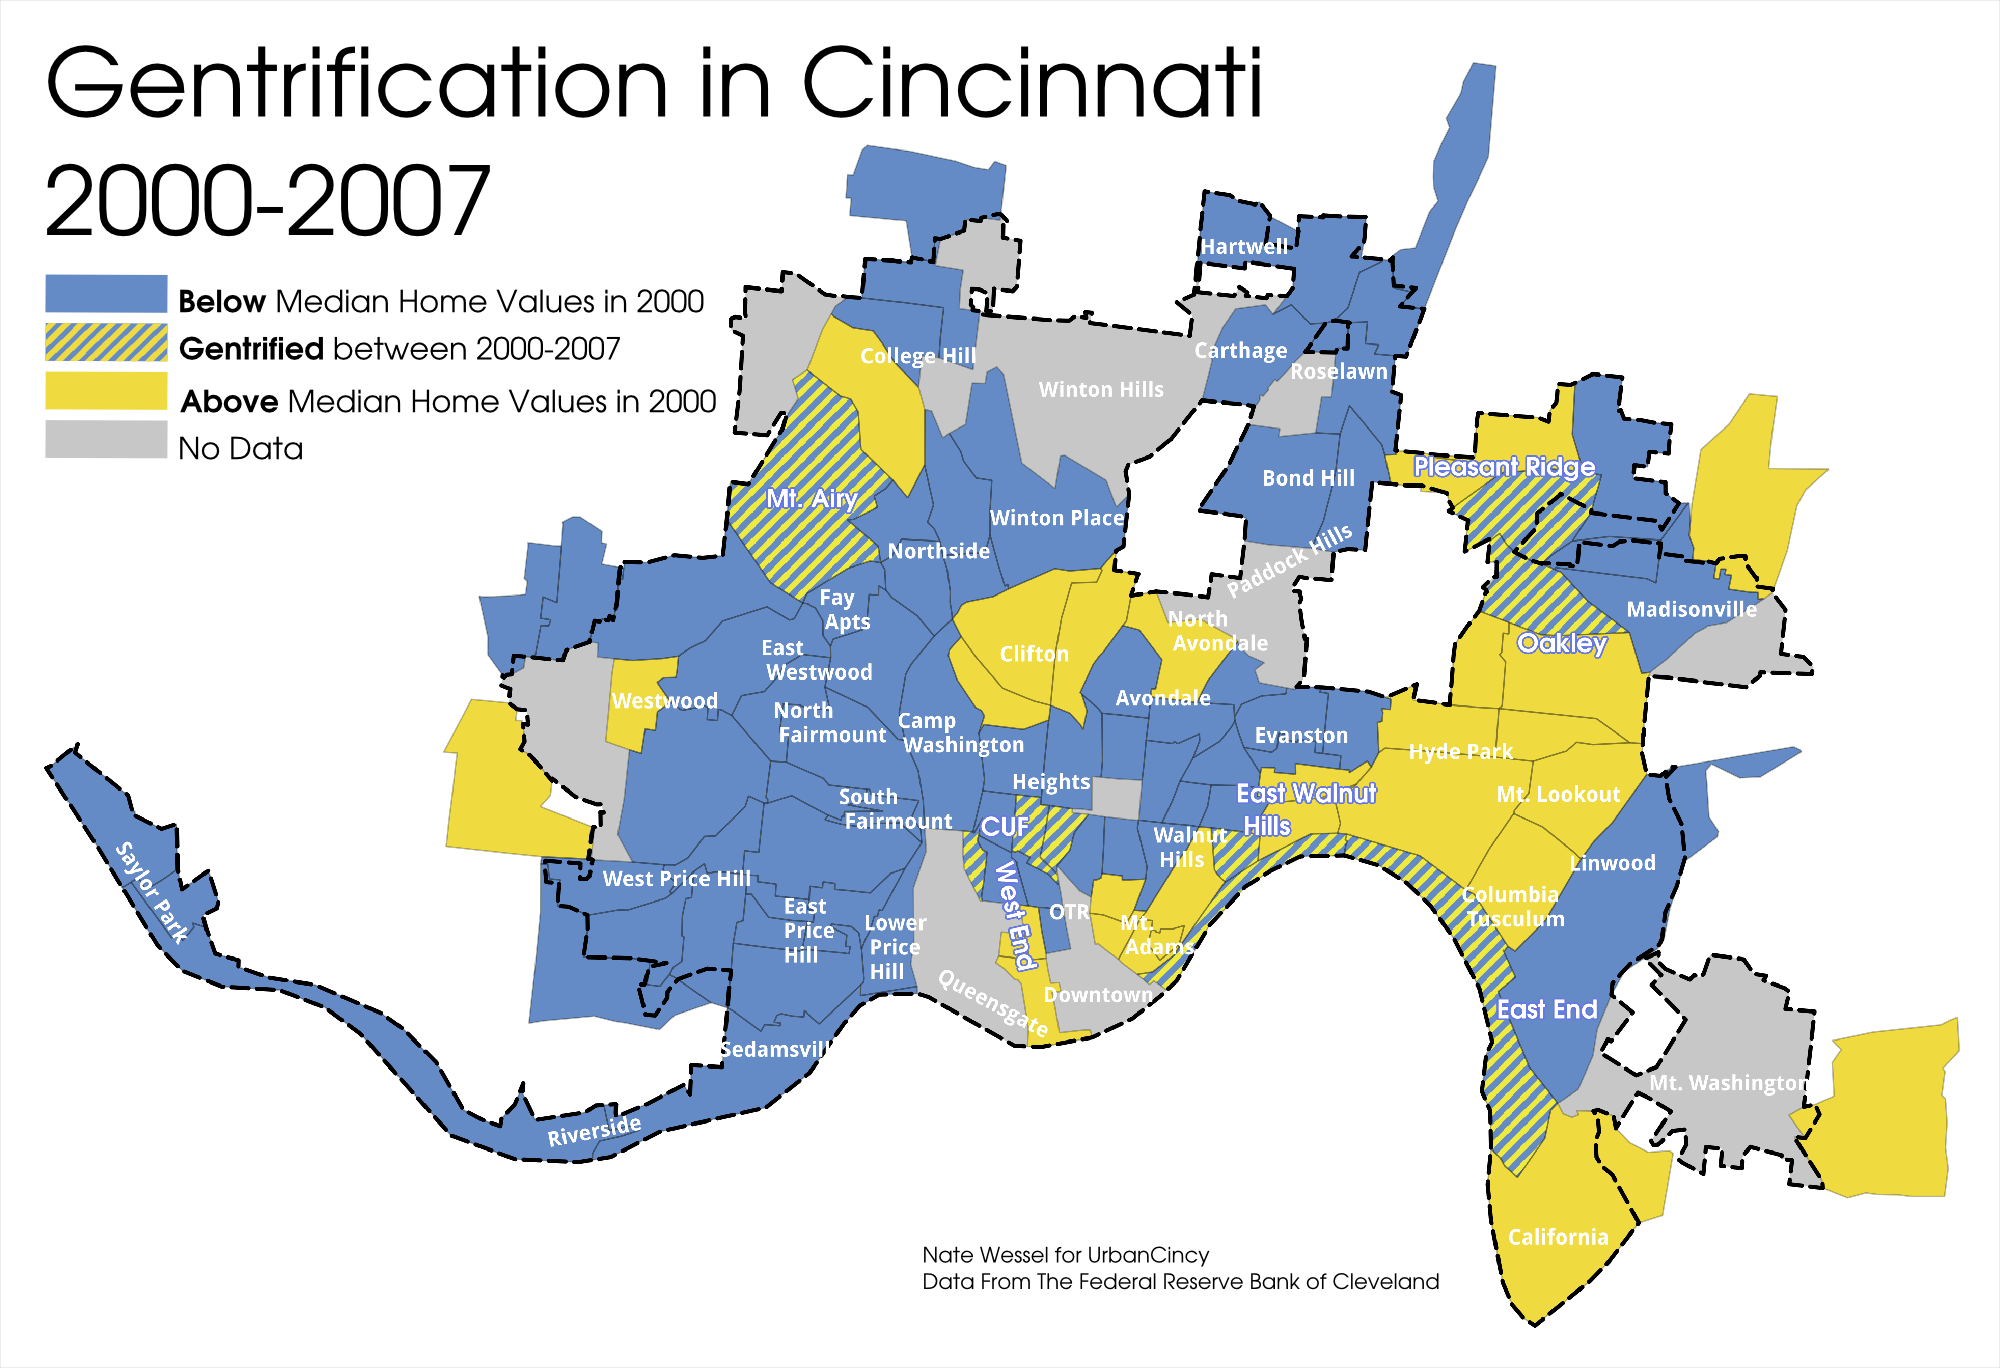 Cincinnati Gentrification (2000-2007)